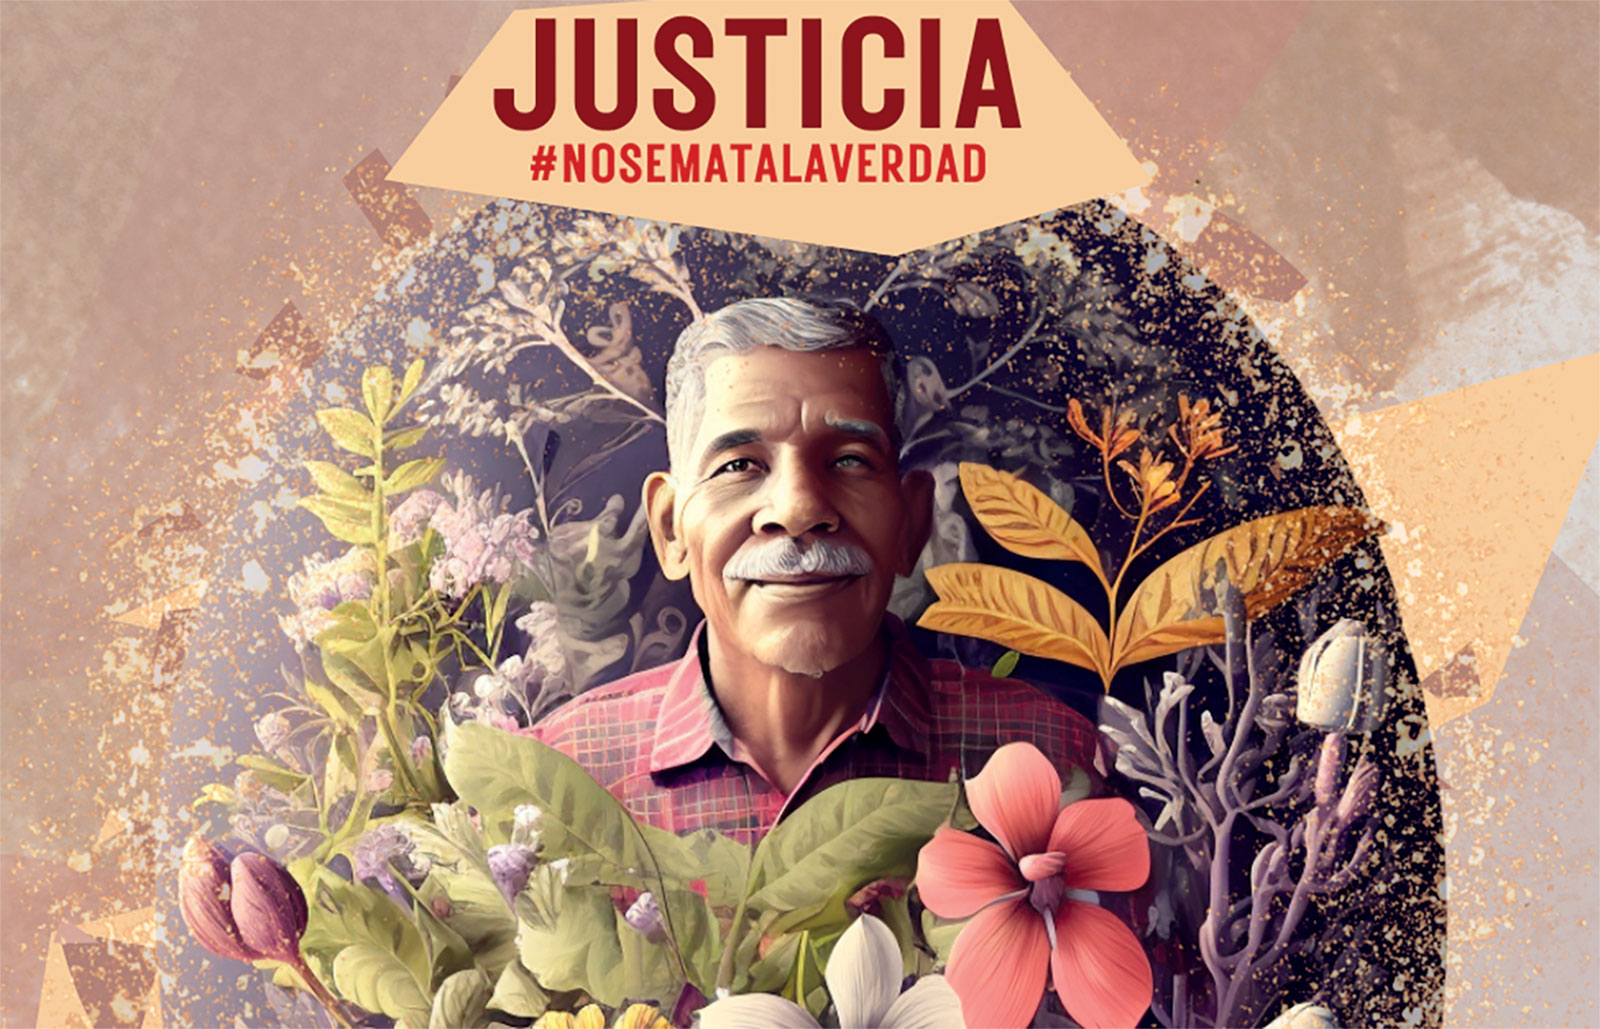 Cartel en demanda de justicia por el asesinato de Eustacio Alcalá, Organización Nacional Anticorrupción